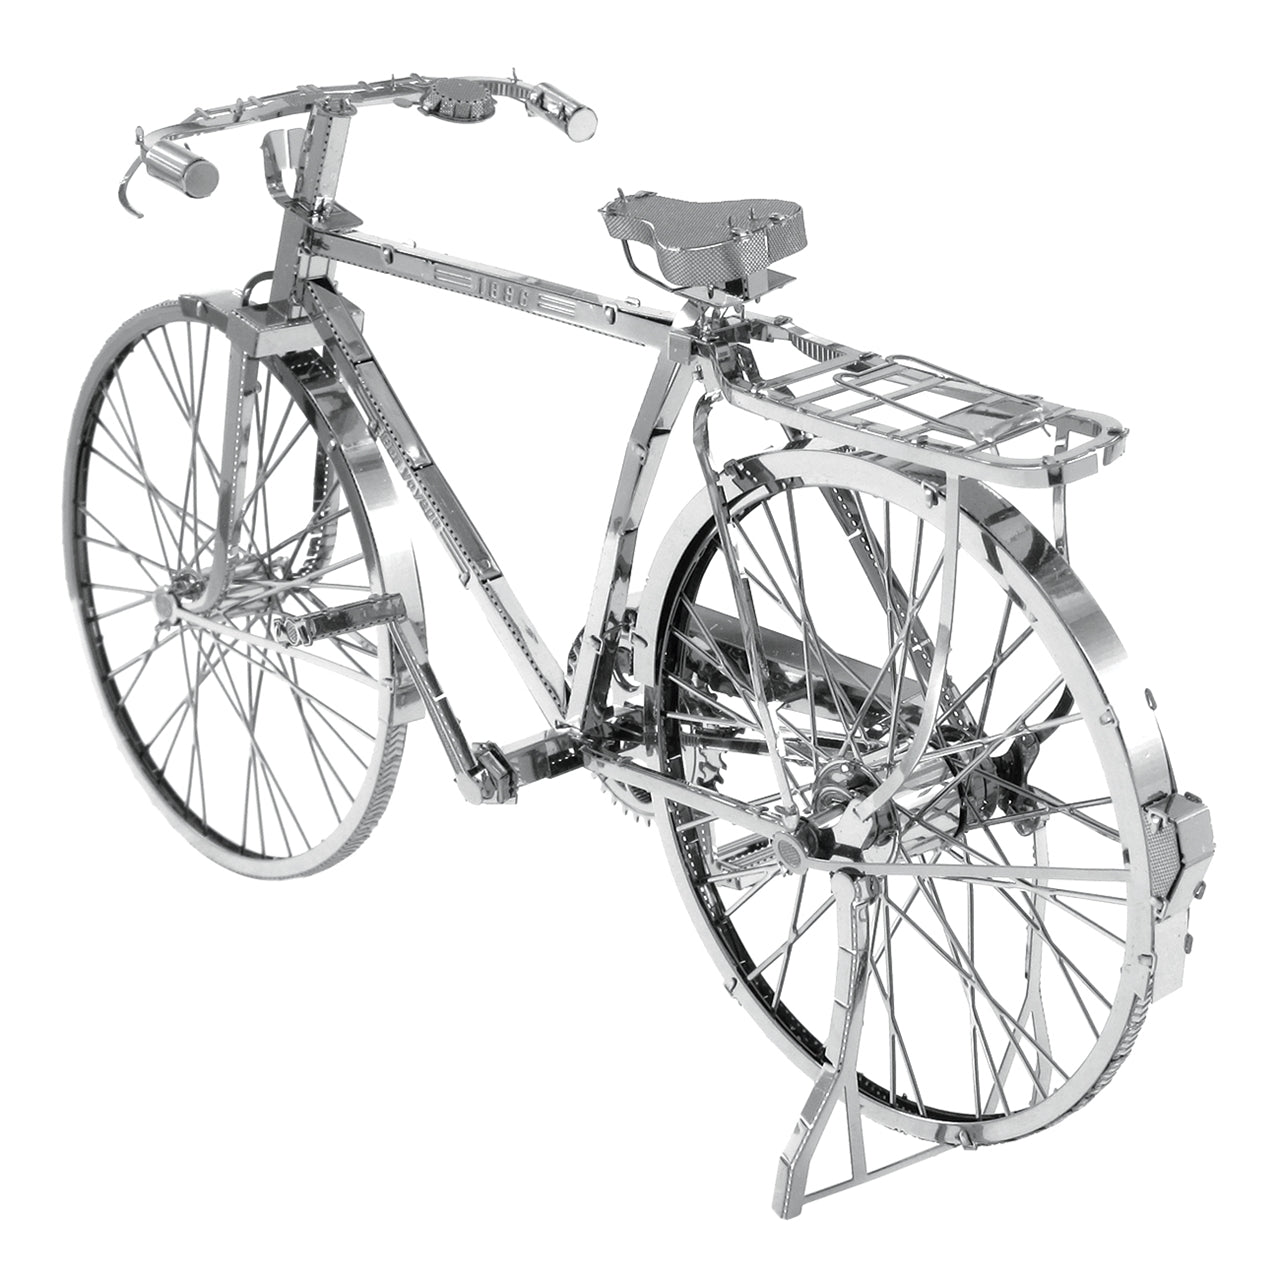 ICX020 Bicicleta Clásica (Armable) (Modelo Descontinuado)